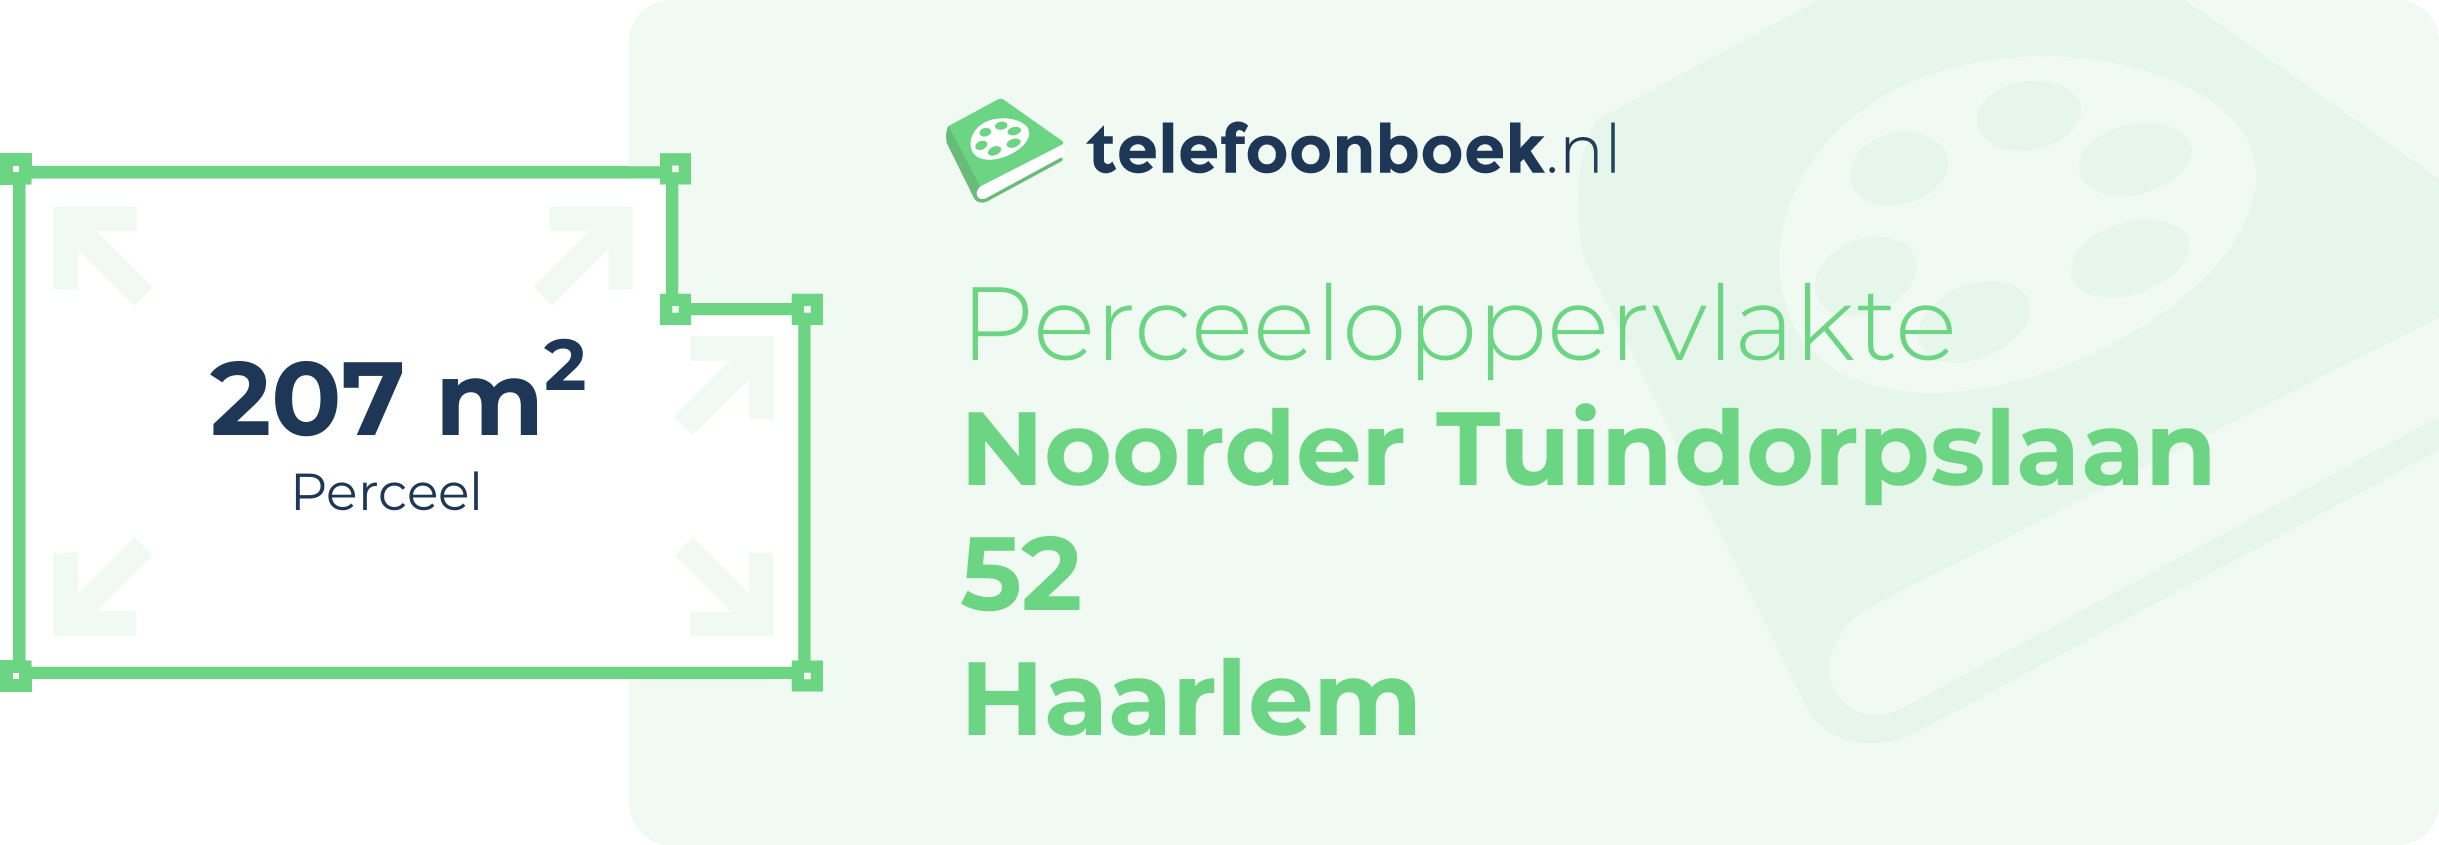 Perceeloppervlakte Noorder Tuindorpslaan 52 Haarlem